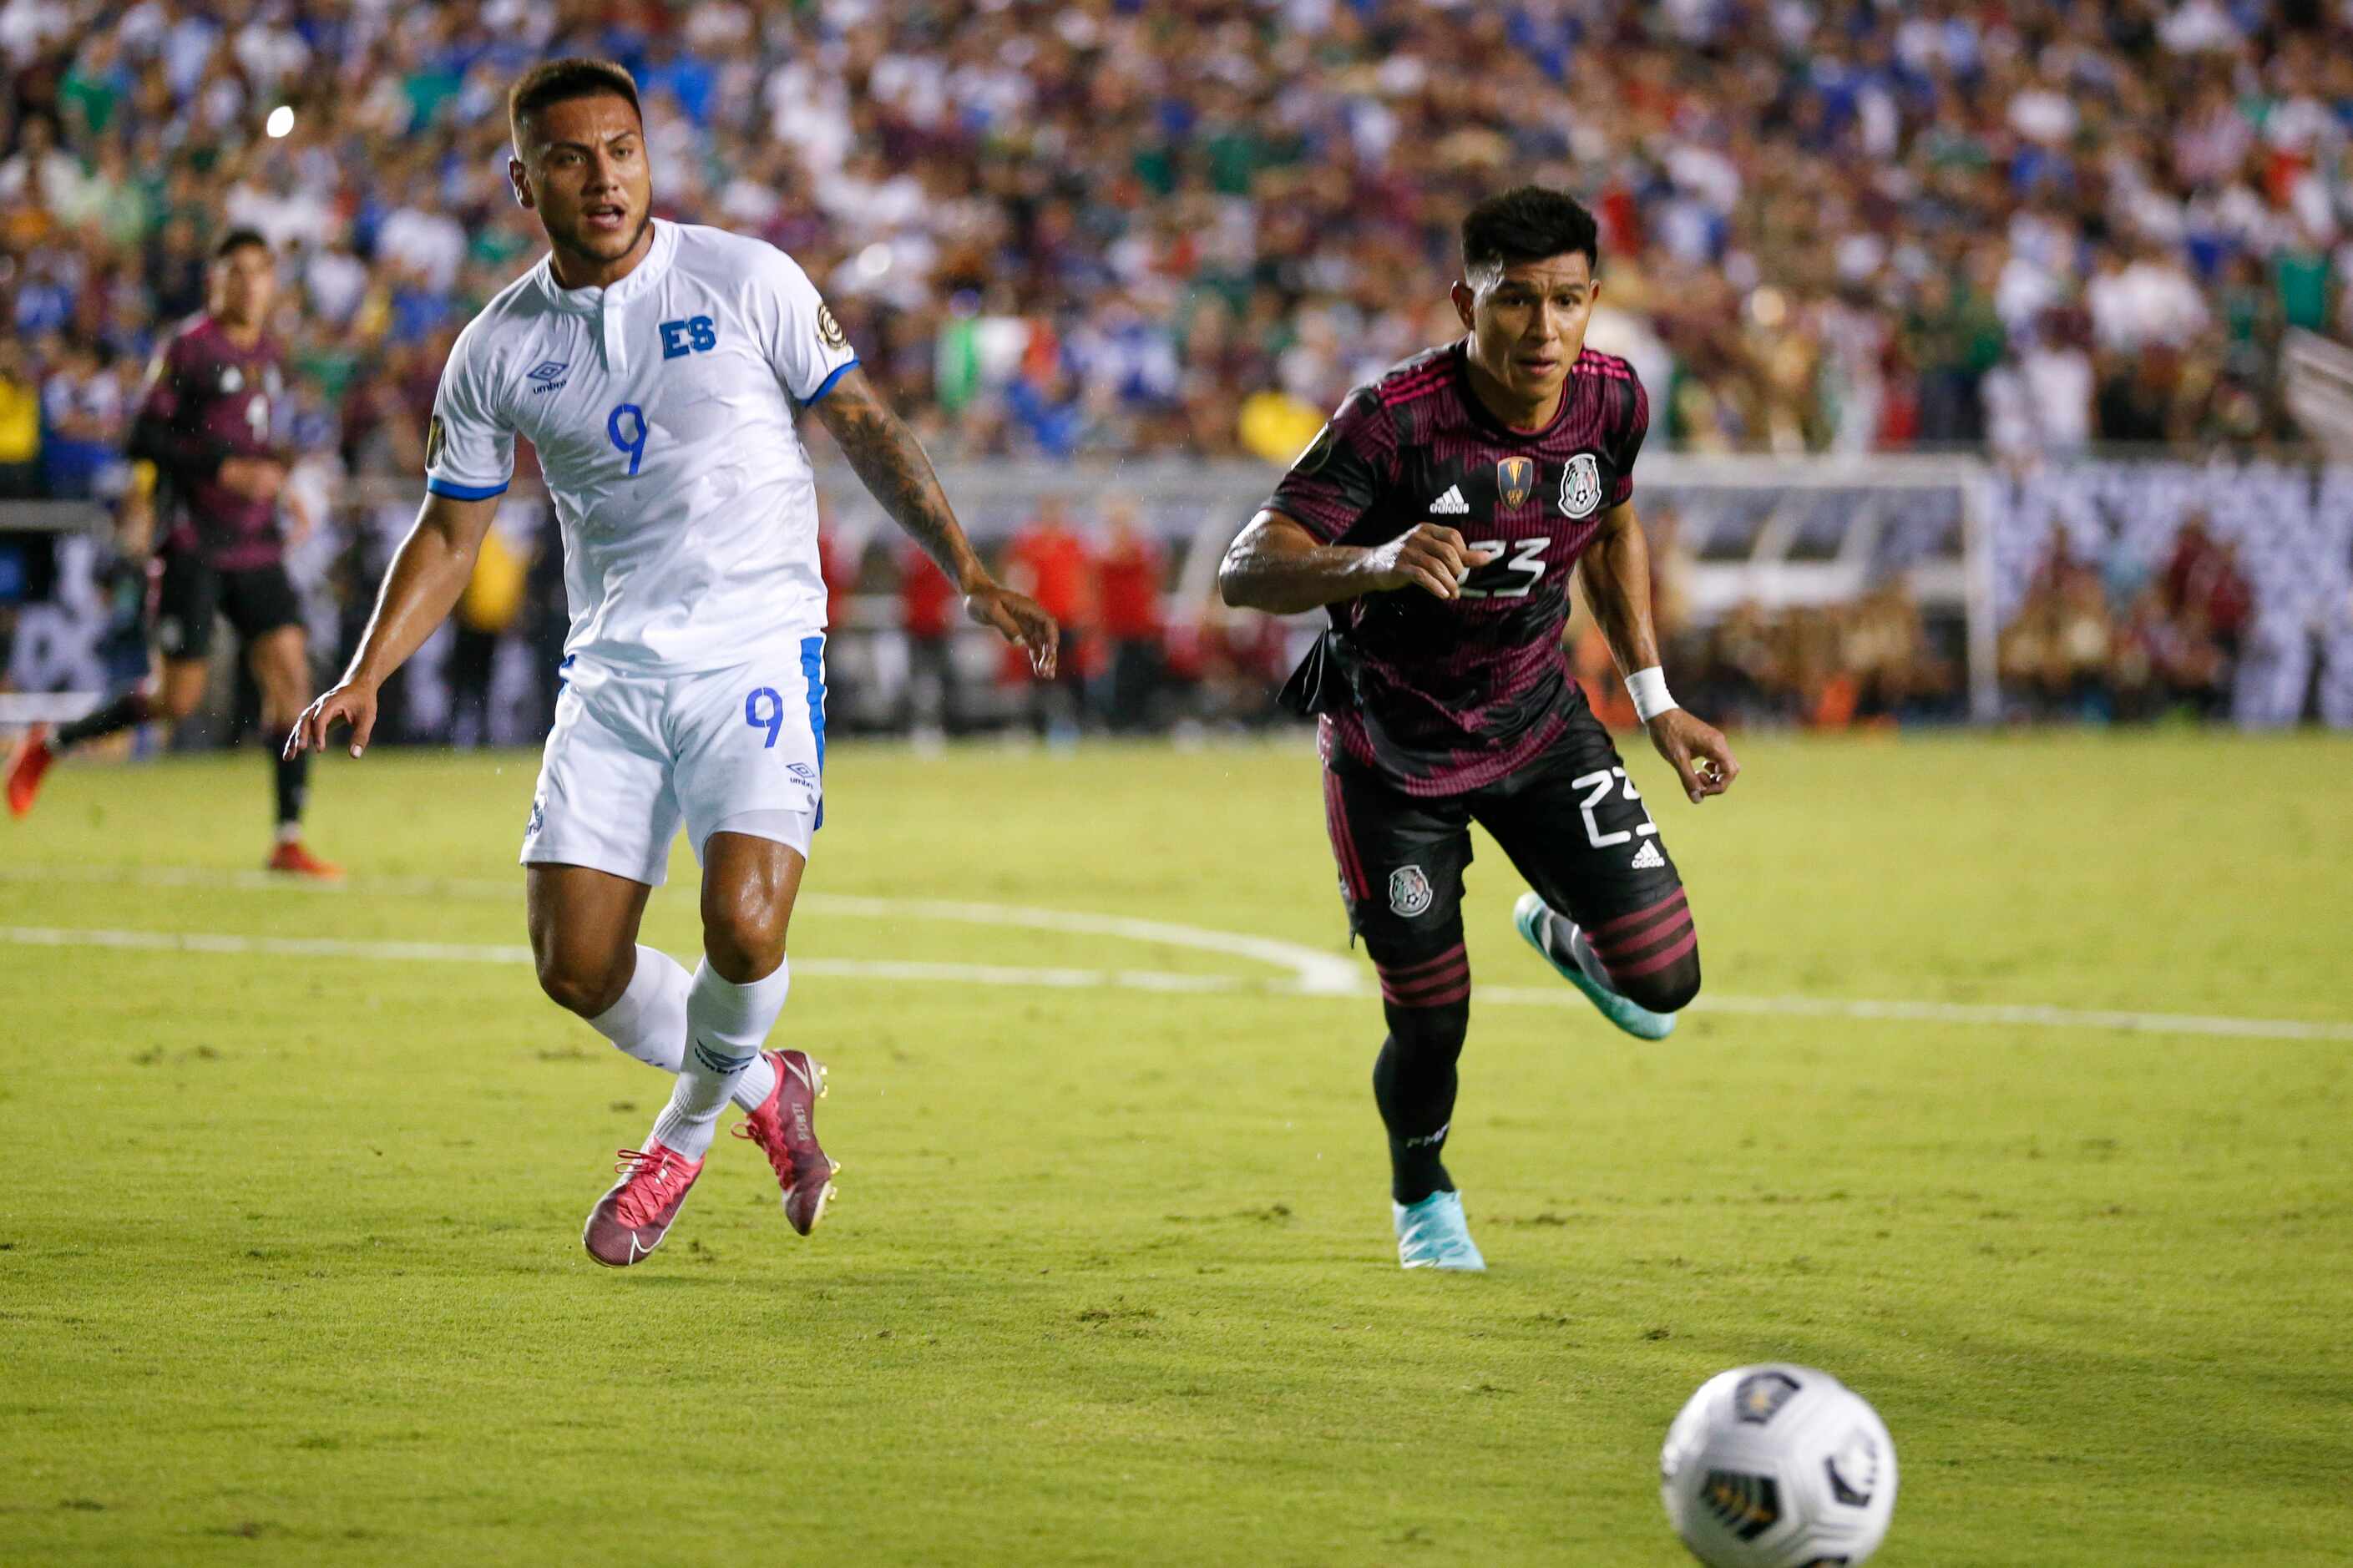 Mexico midfielder Jesús Gallardo (23) and El Salvador midfielder Walmer Martínez (9) race to...